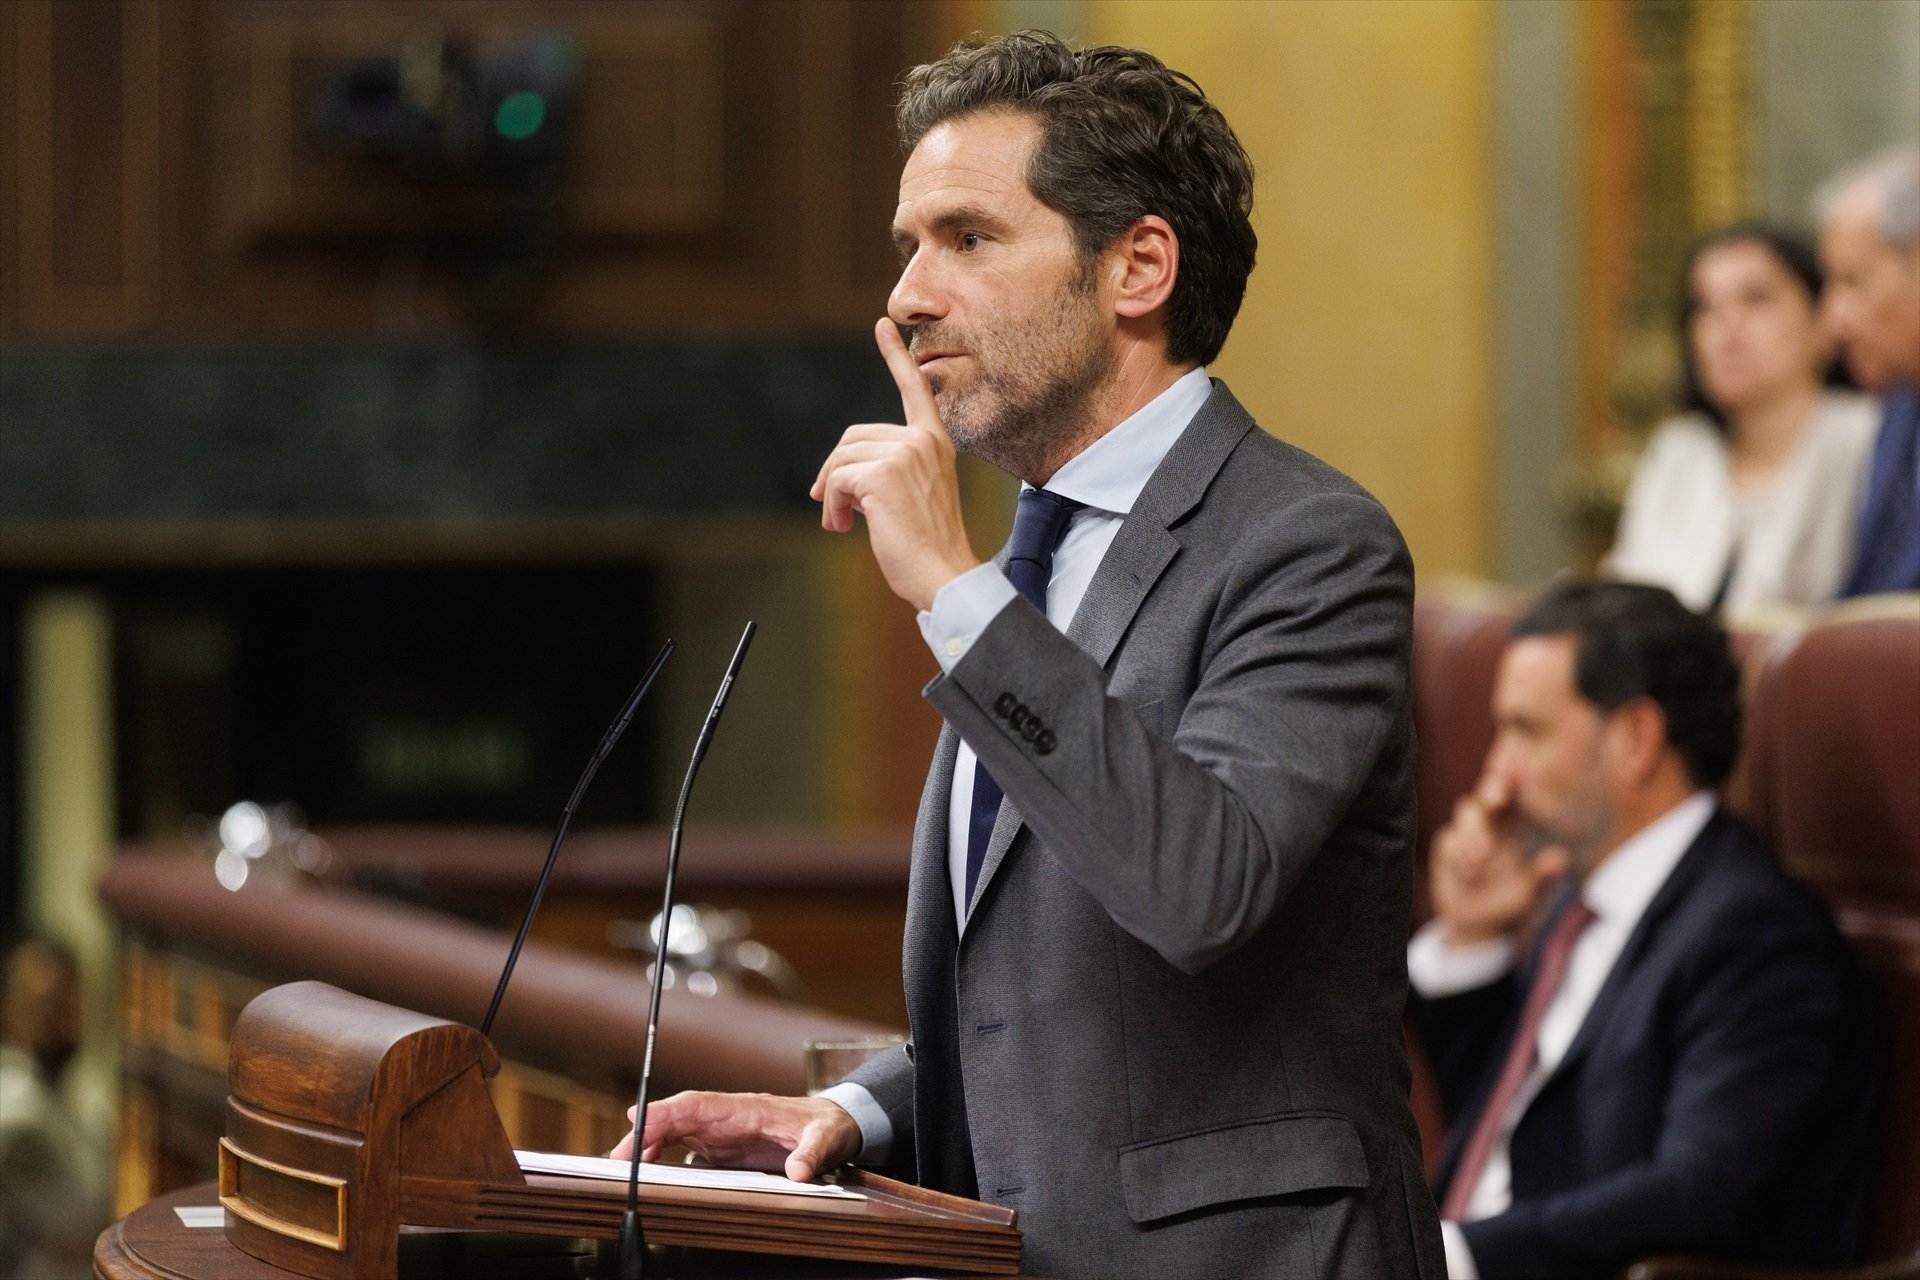 Mala maror al PP per l’ús del basc al Congrés per part del seu portaveu: "Gravíssim"